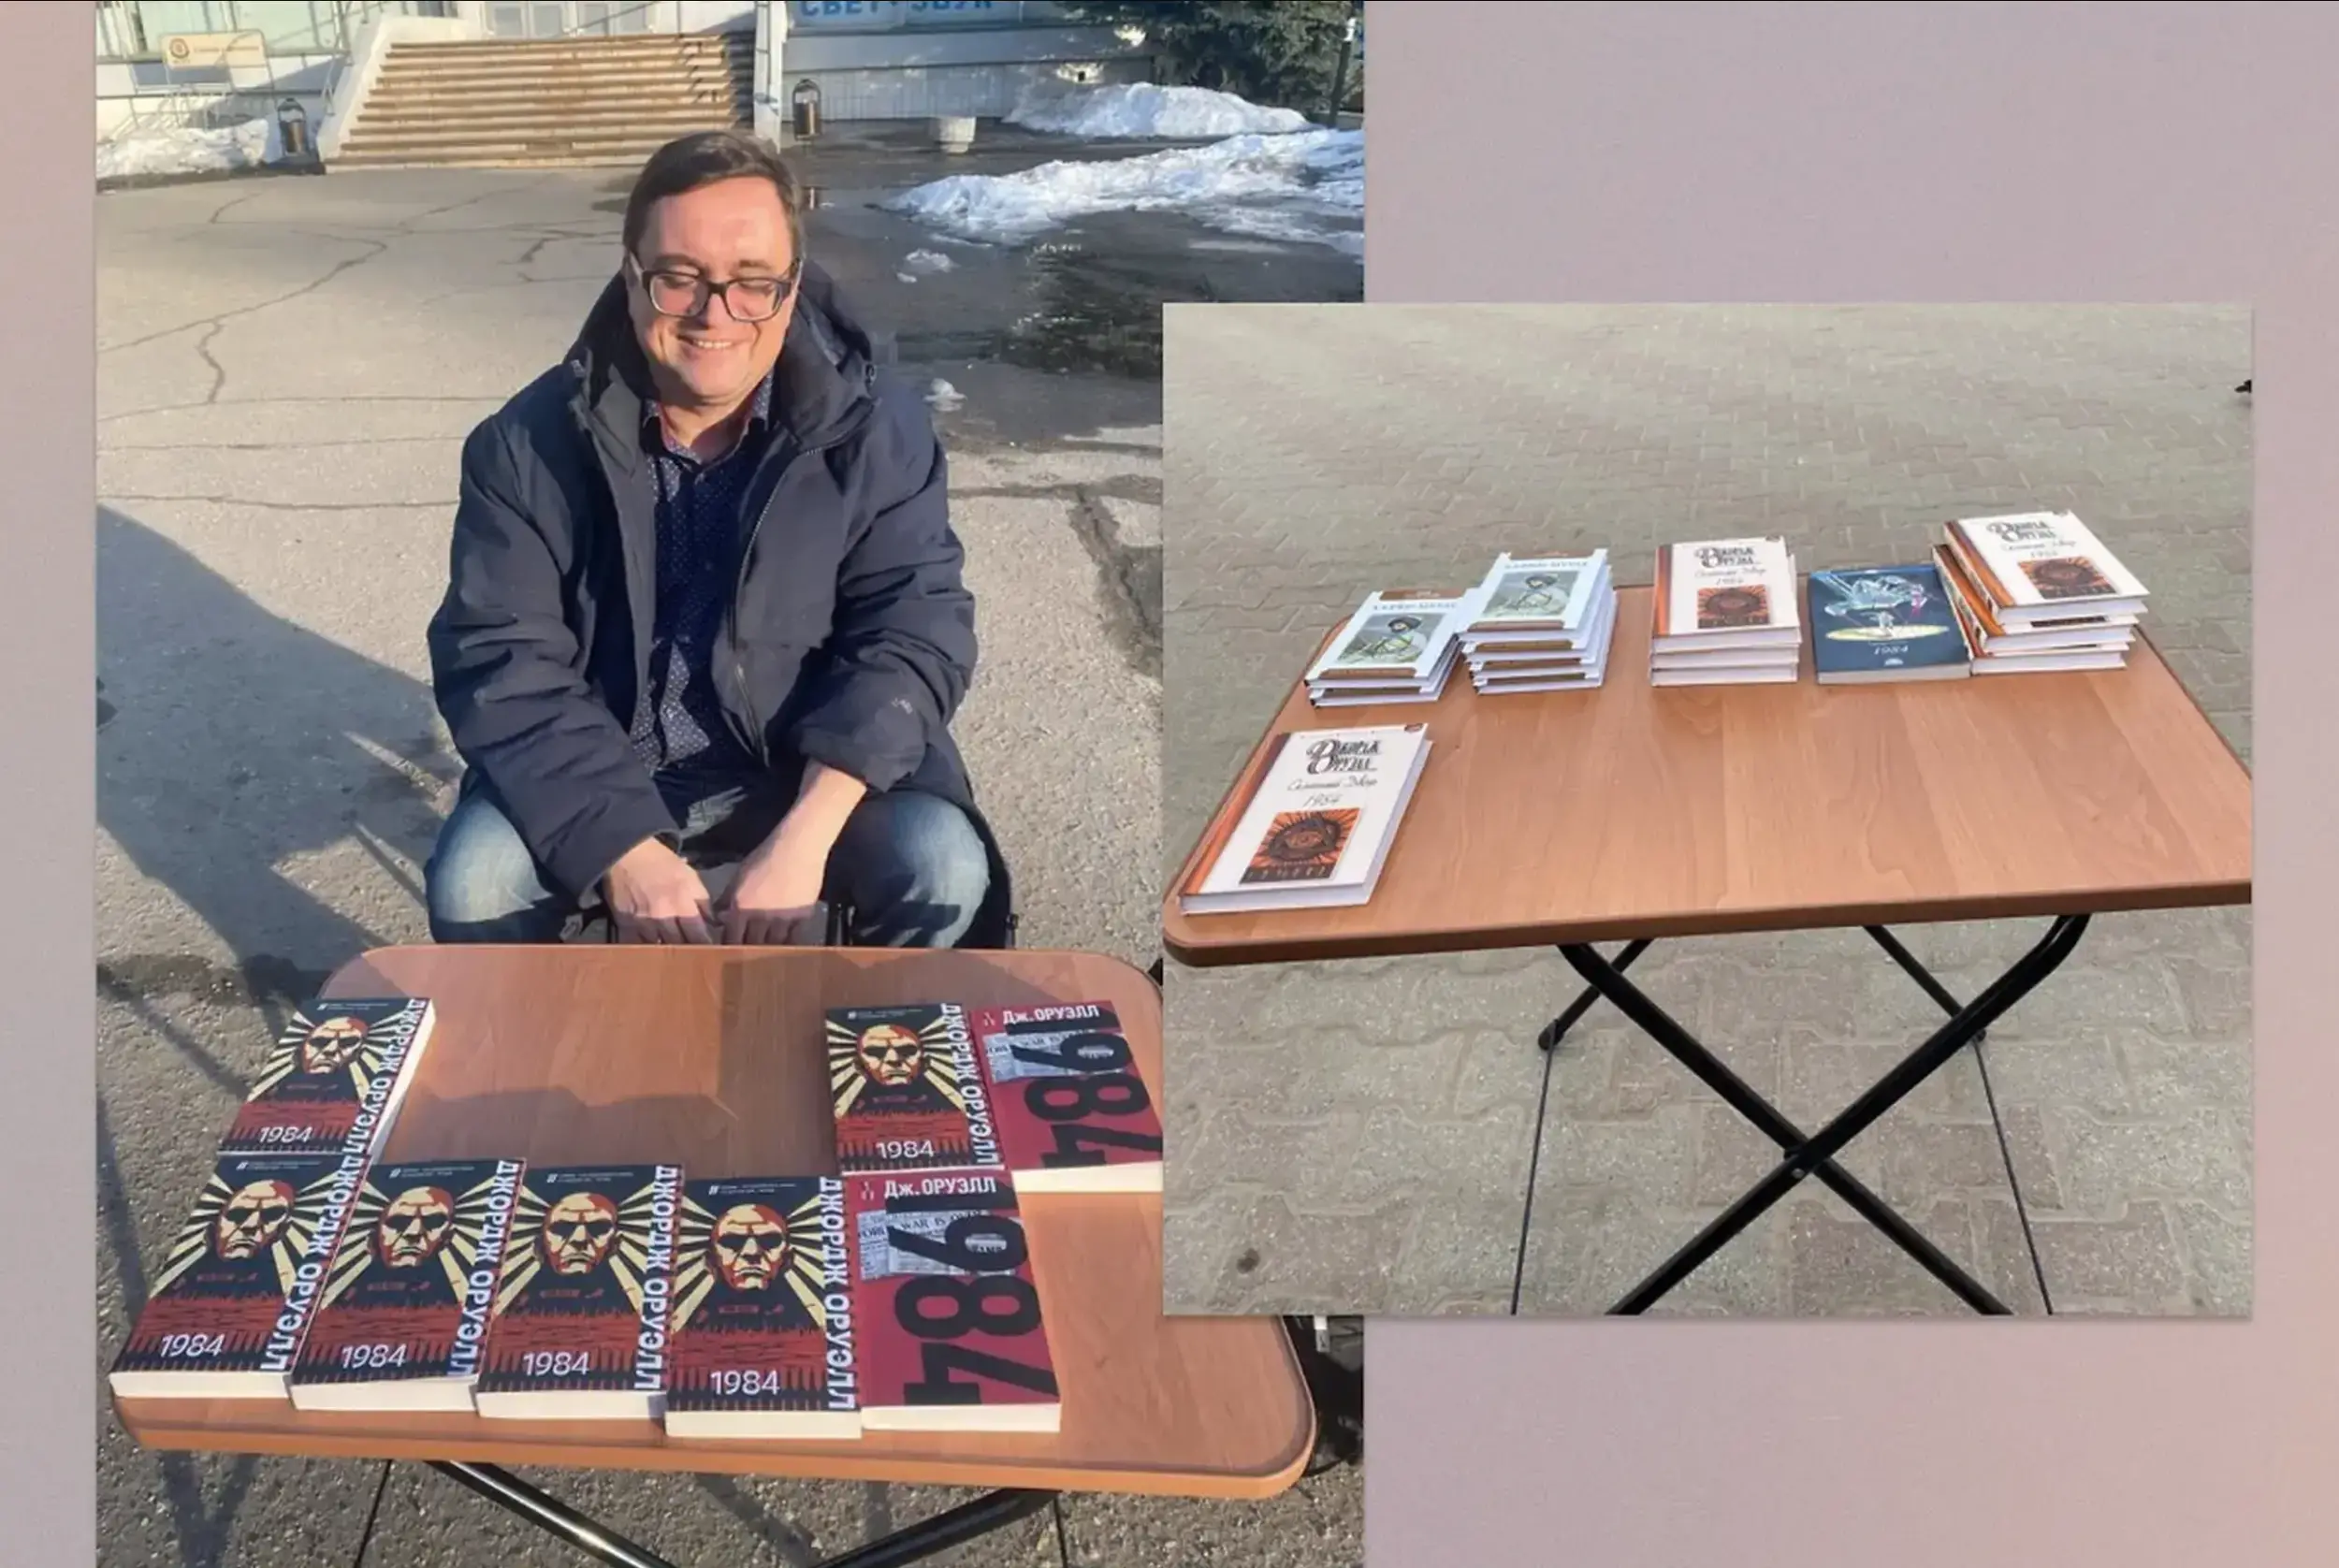 A man selling 1984 novels